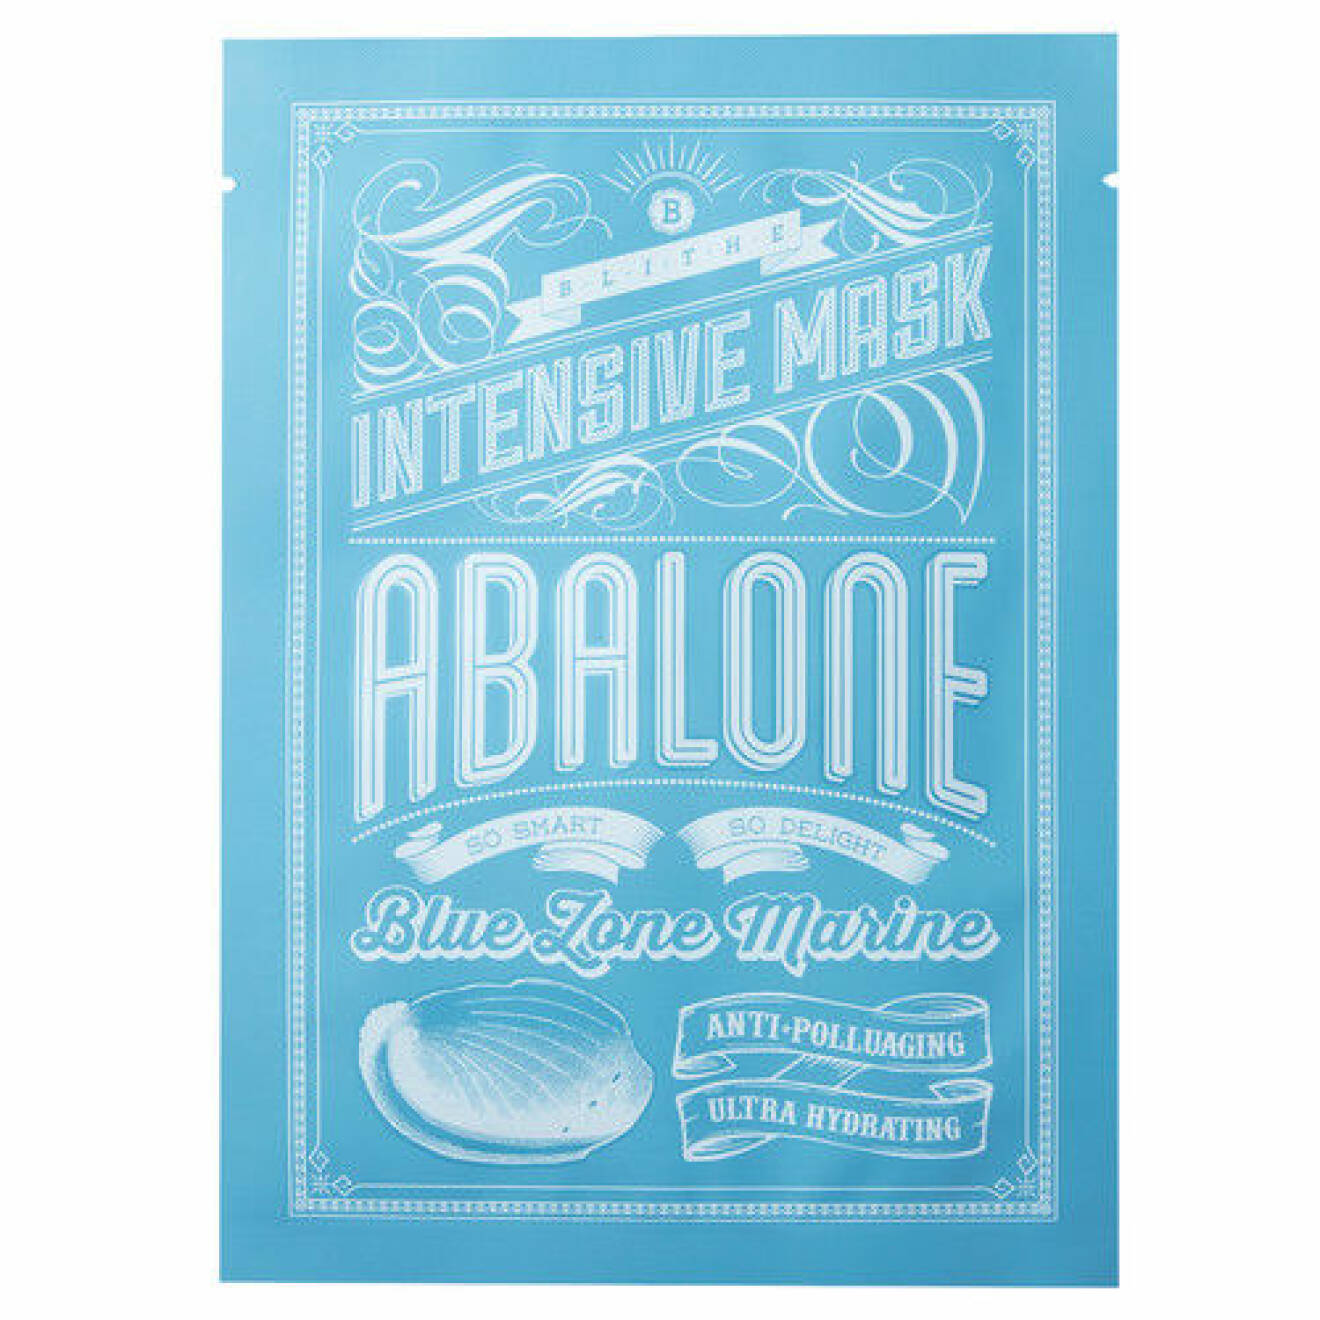 Blue Zone Marine Intensive Sheetmask, Abalone